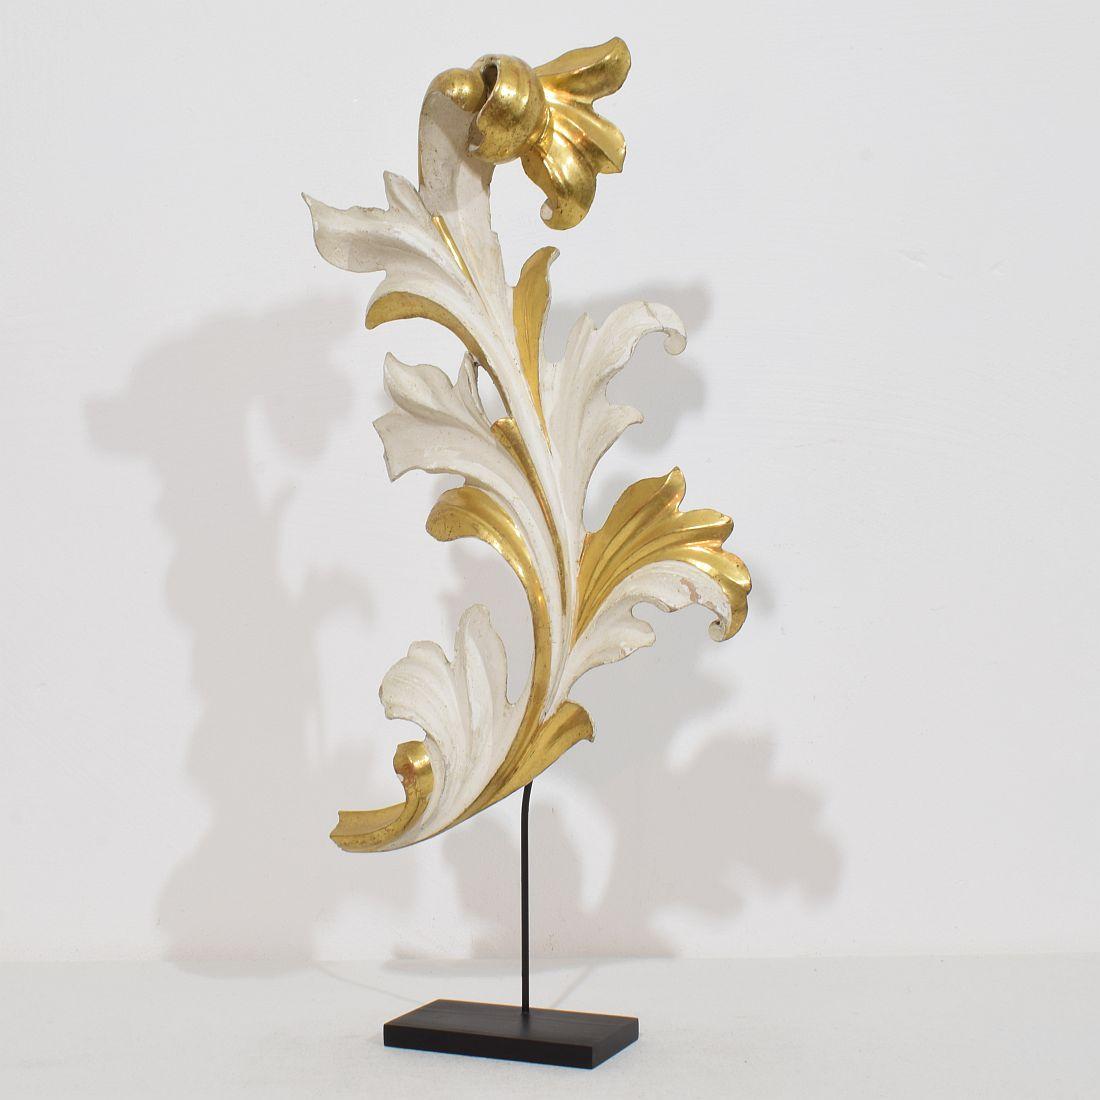 Wunderschönes handgeschnitztes Akanthusblatt-Ornament aus Goldholz, das einst eine Kapelle schmückte, ein Originalstück aus der Zeit, das aufgrund seiner  hohes Alter hat  ein wunderbar verwittertes Aussehen.
Italien um 1780/1850 , verwittert,